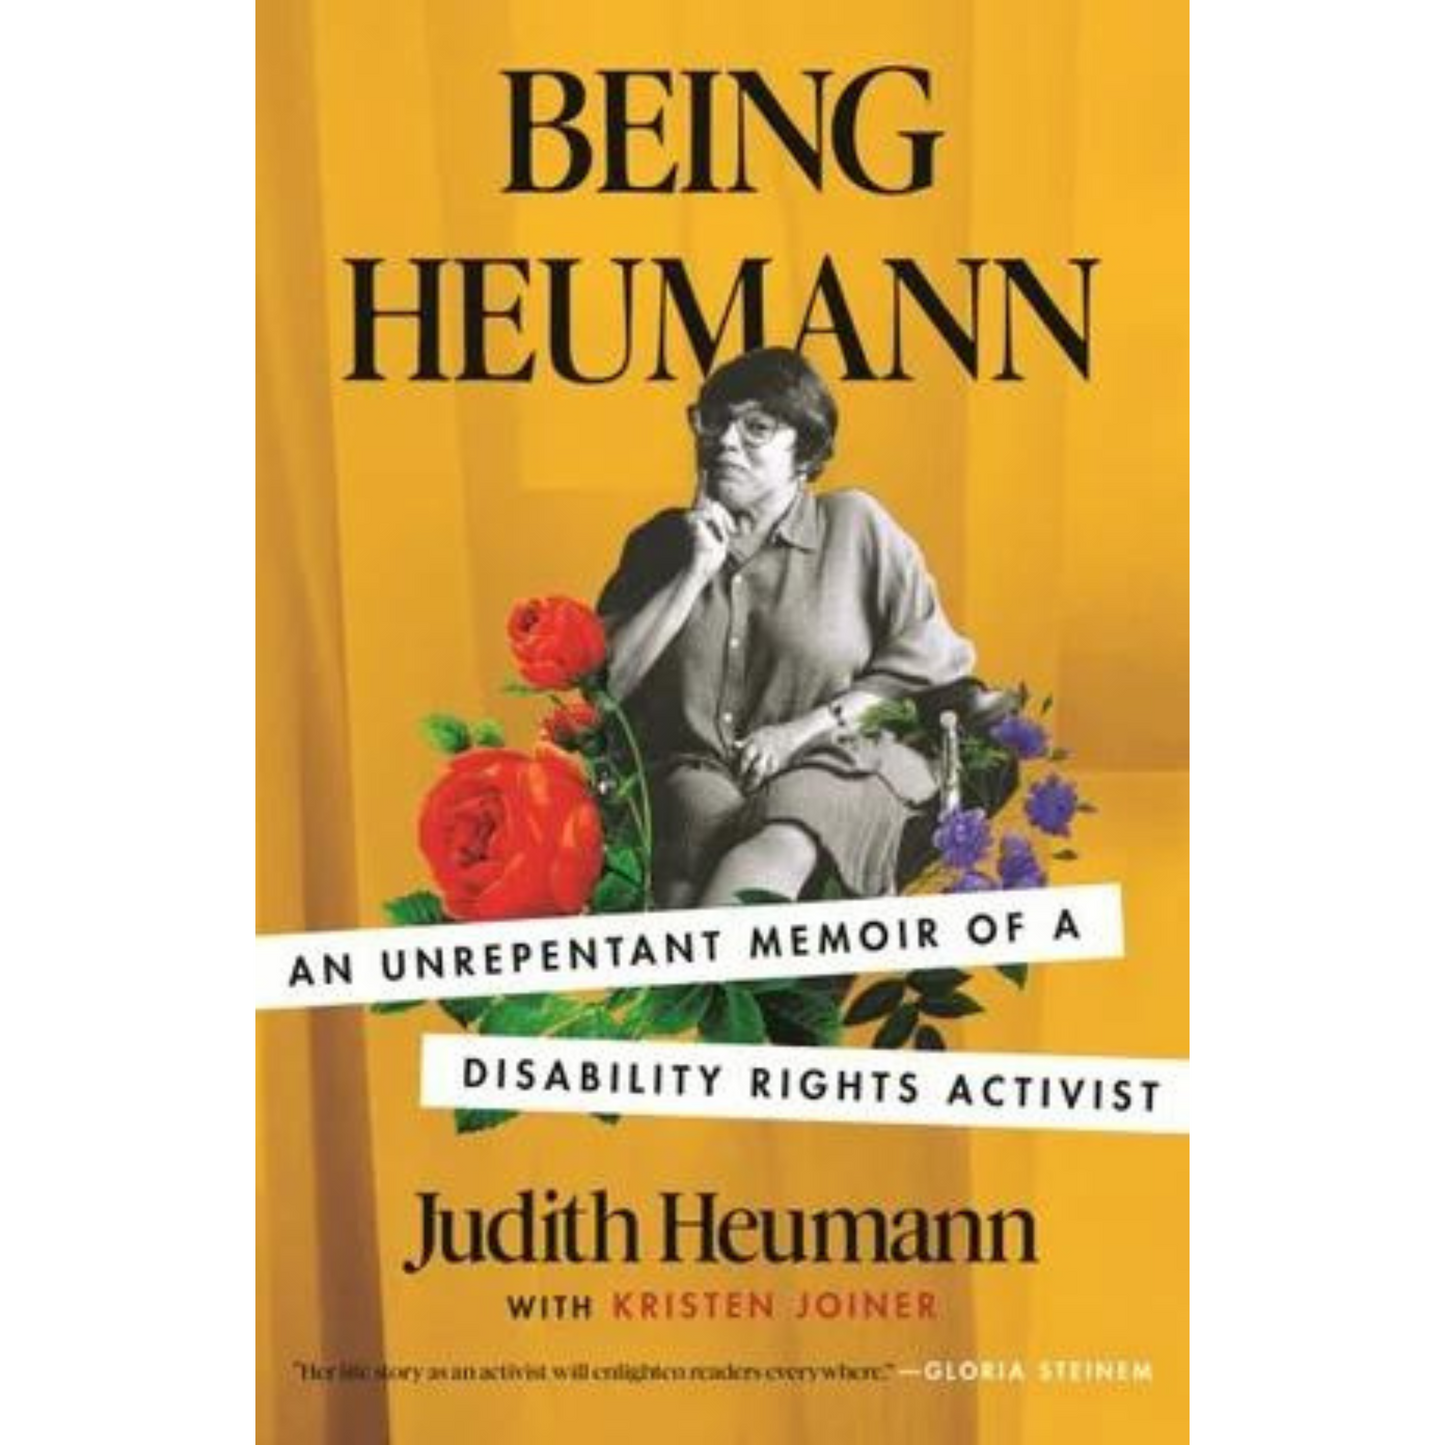 Book_Being_Heumann_by_Judith_Heumann